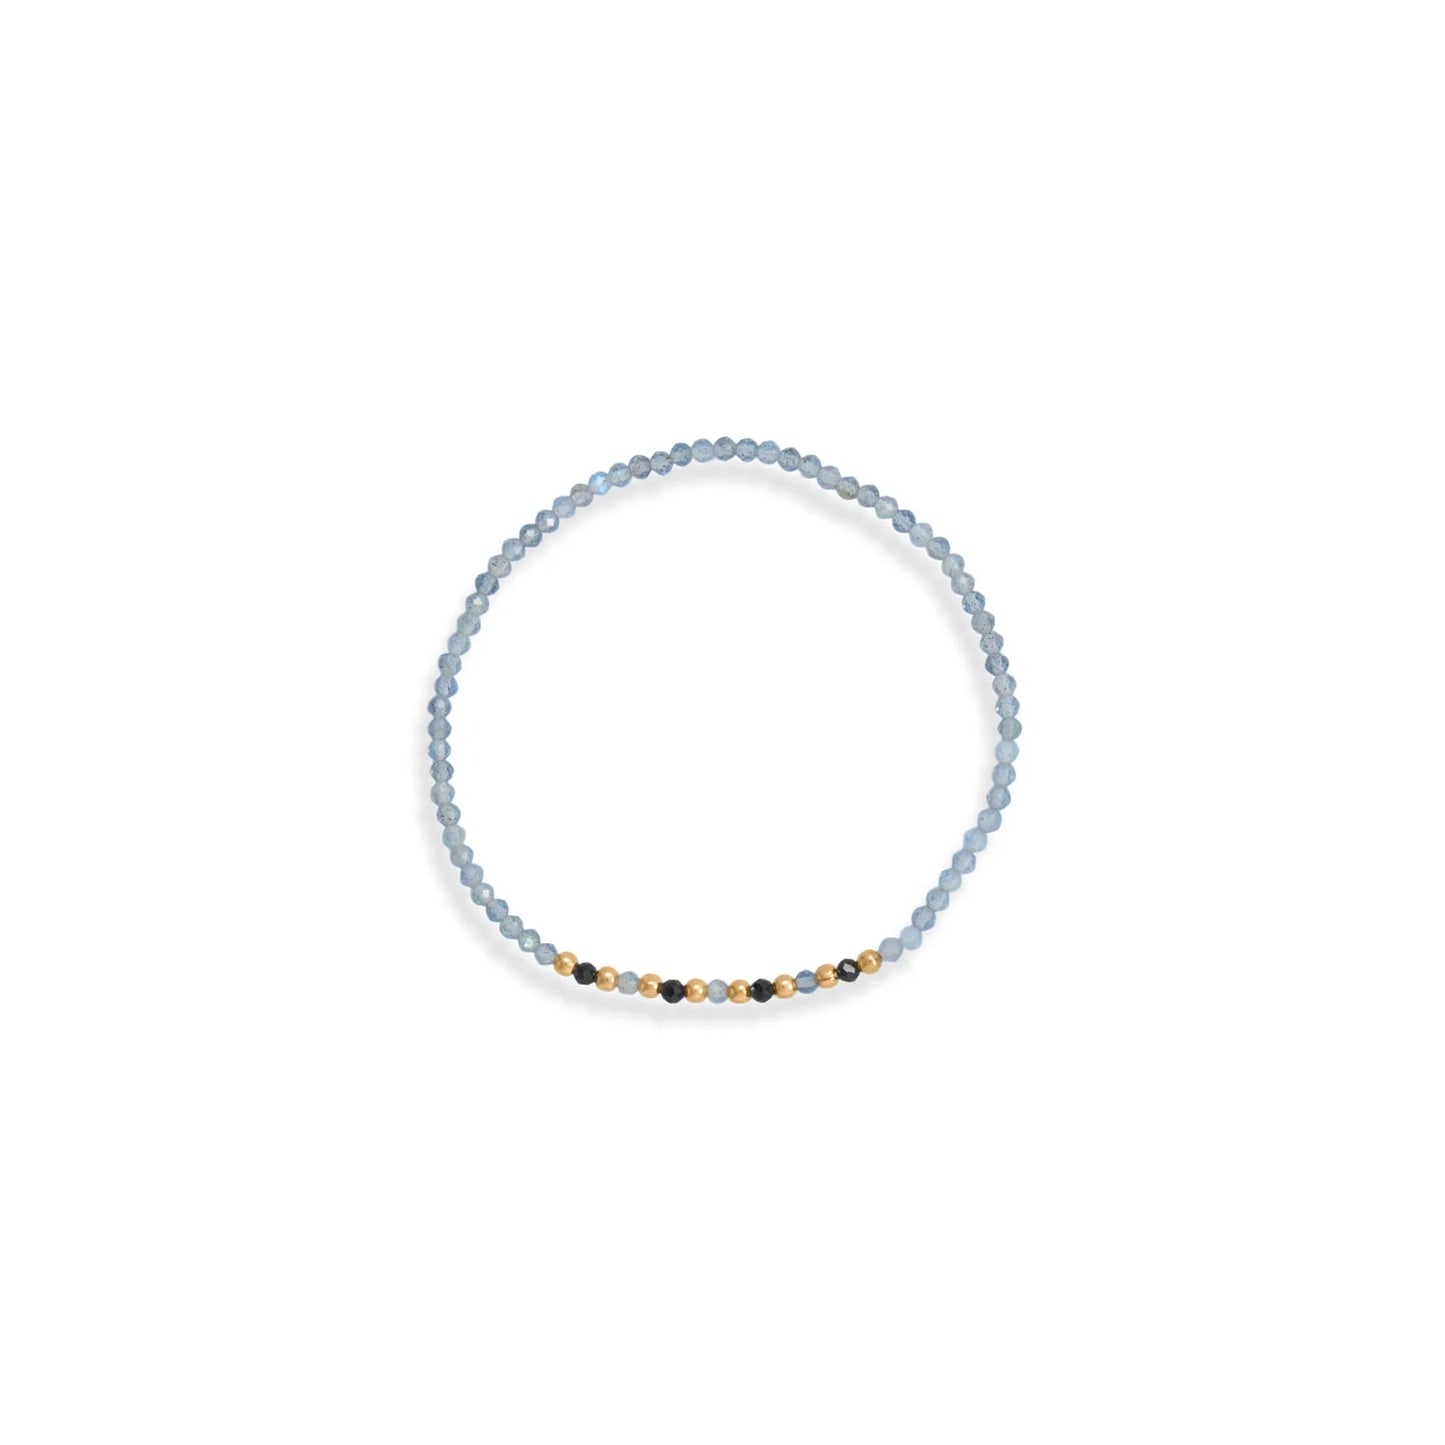 Labradorite & Black Spinel Bracelet Set - 14K Gold Plated